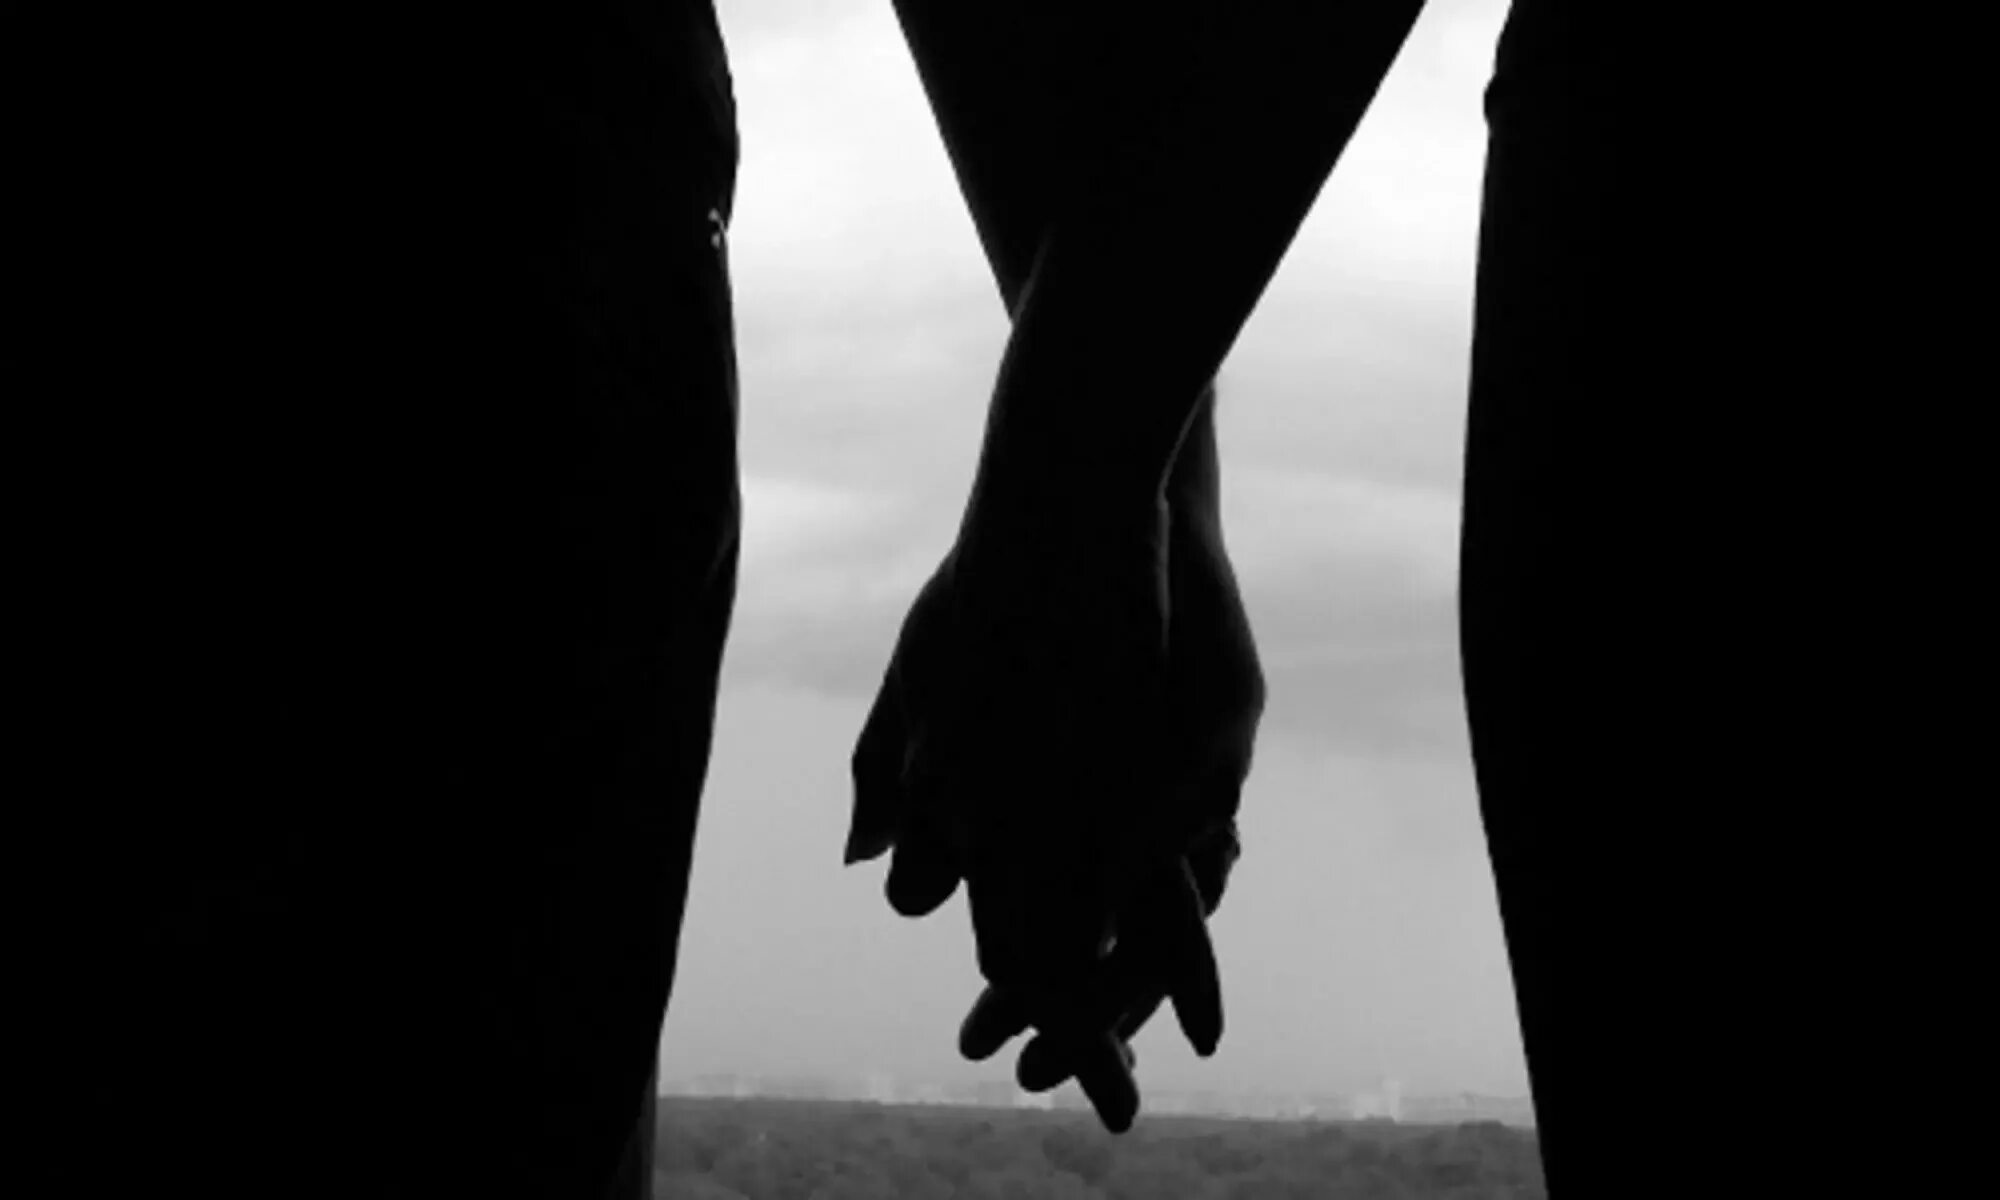 Держаться в тени. Рука в руке. Руки мужчины и женщины. Парень и девушка держатся за руки. Взявшись за руки в темноте.